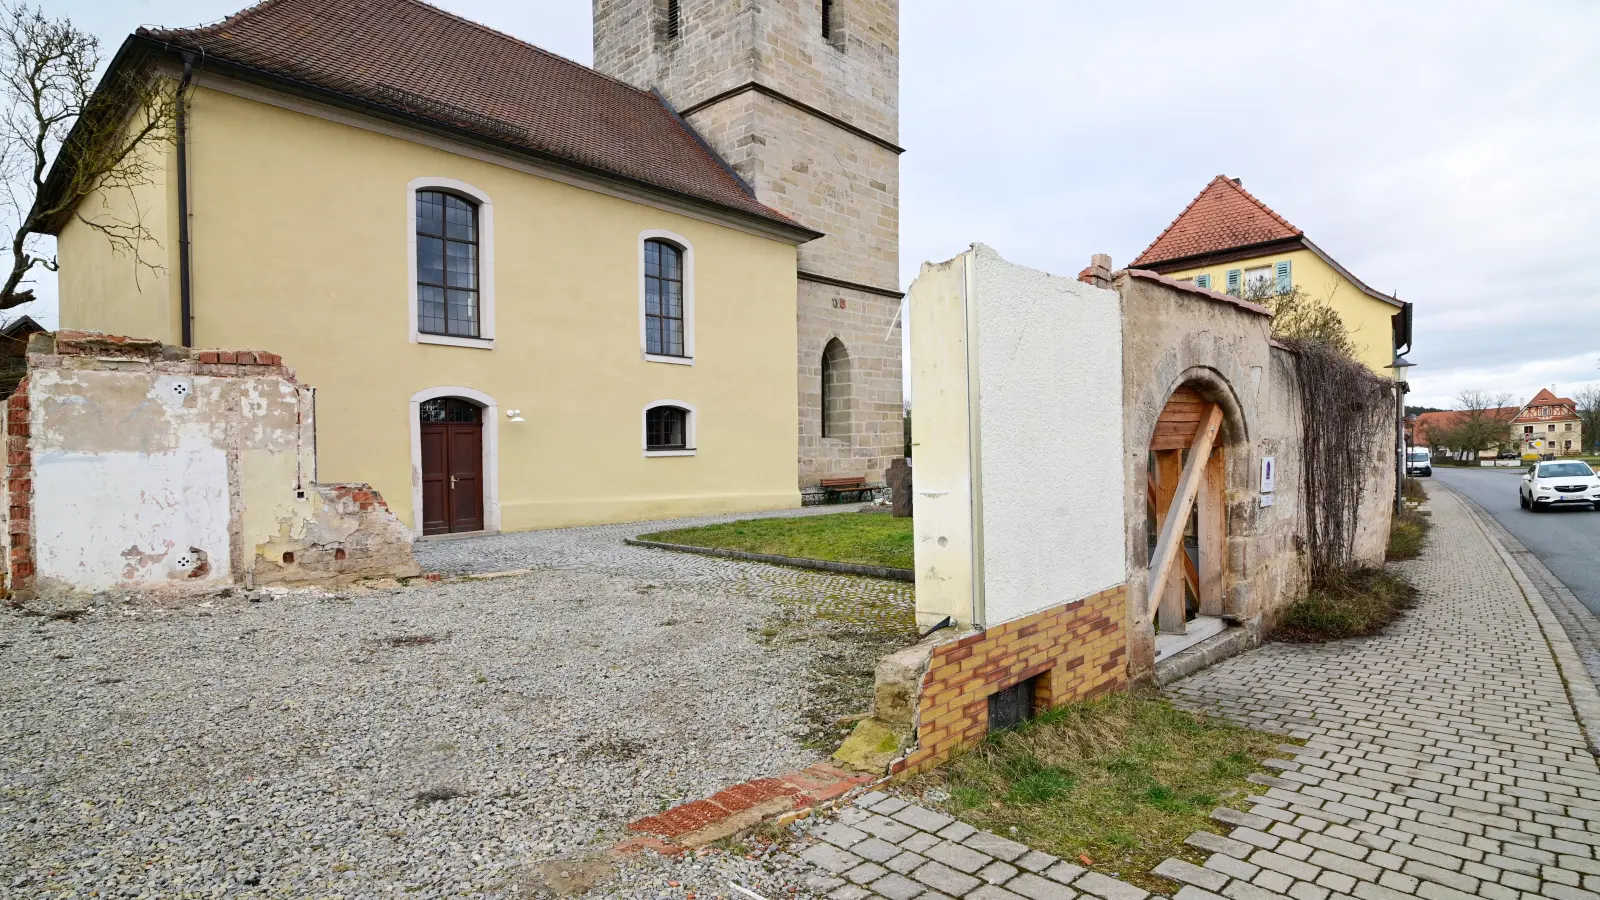 Der Vorplatz der Kirche in Unternbibert präsentiert sich in keinem guten Zustand. (Foto: Jim Albright)